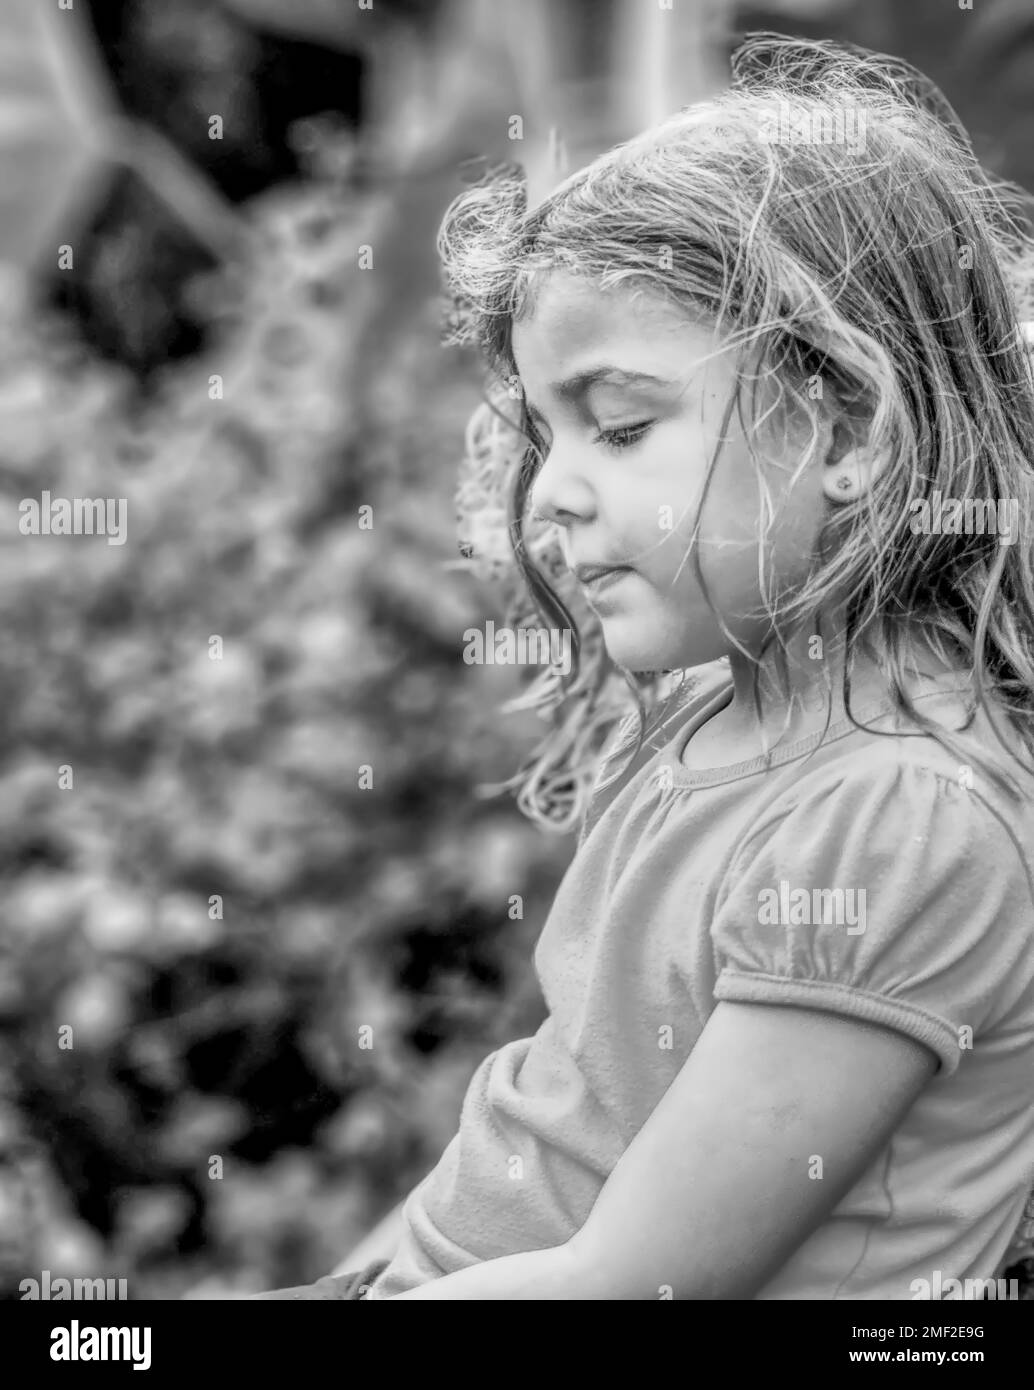 Seitenfoto eines kleinen Mädchens im Freien, in Schwarz und Weiß Stockfoto